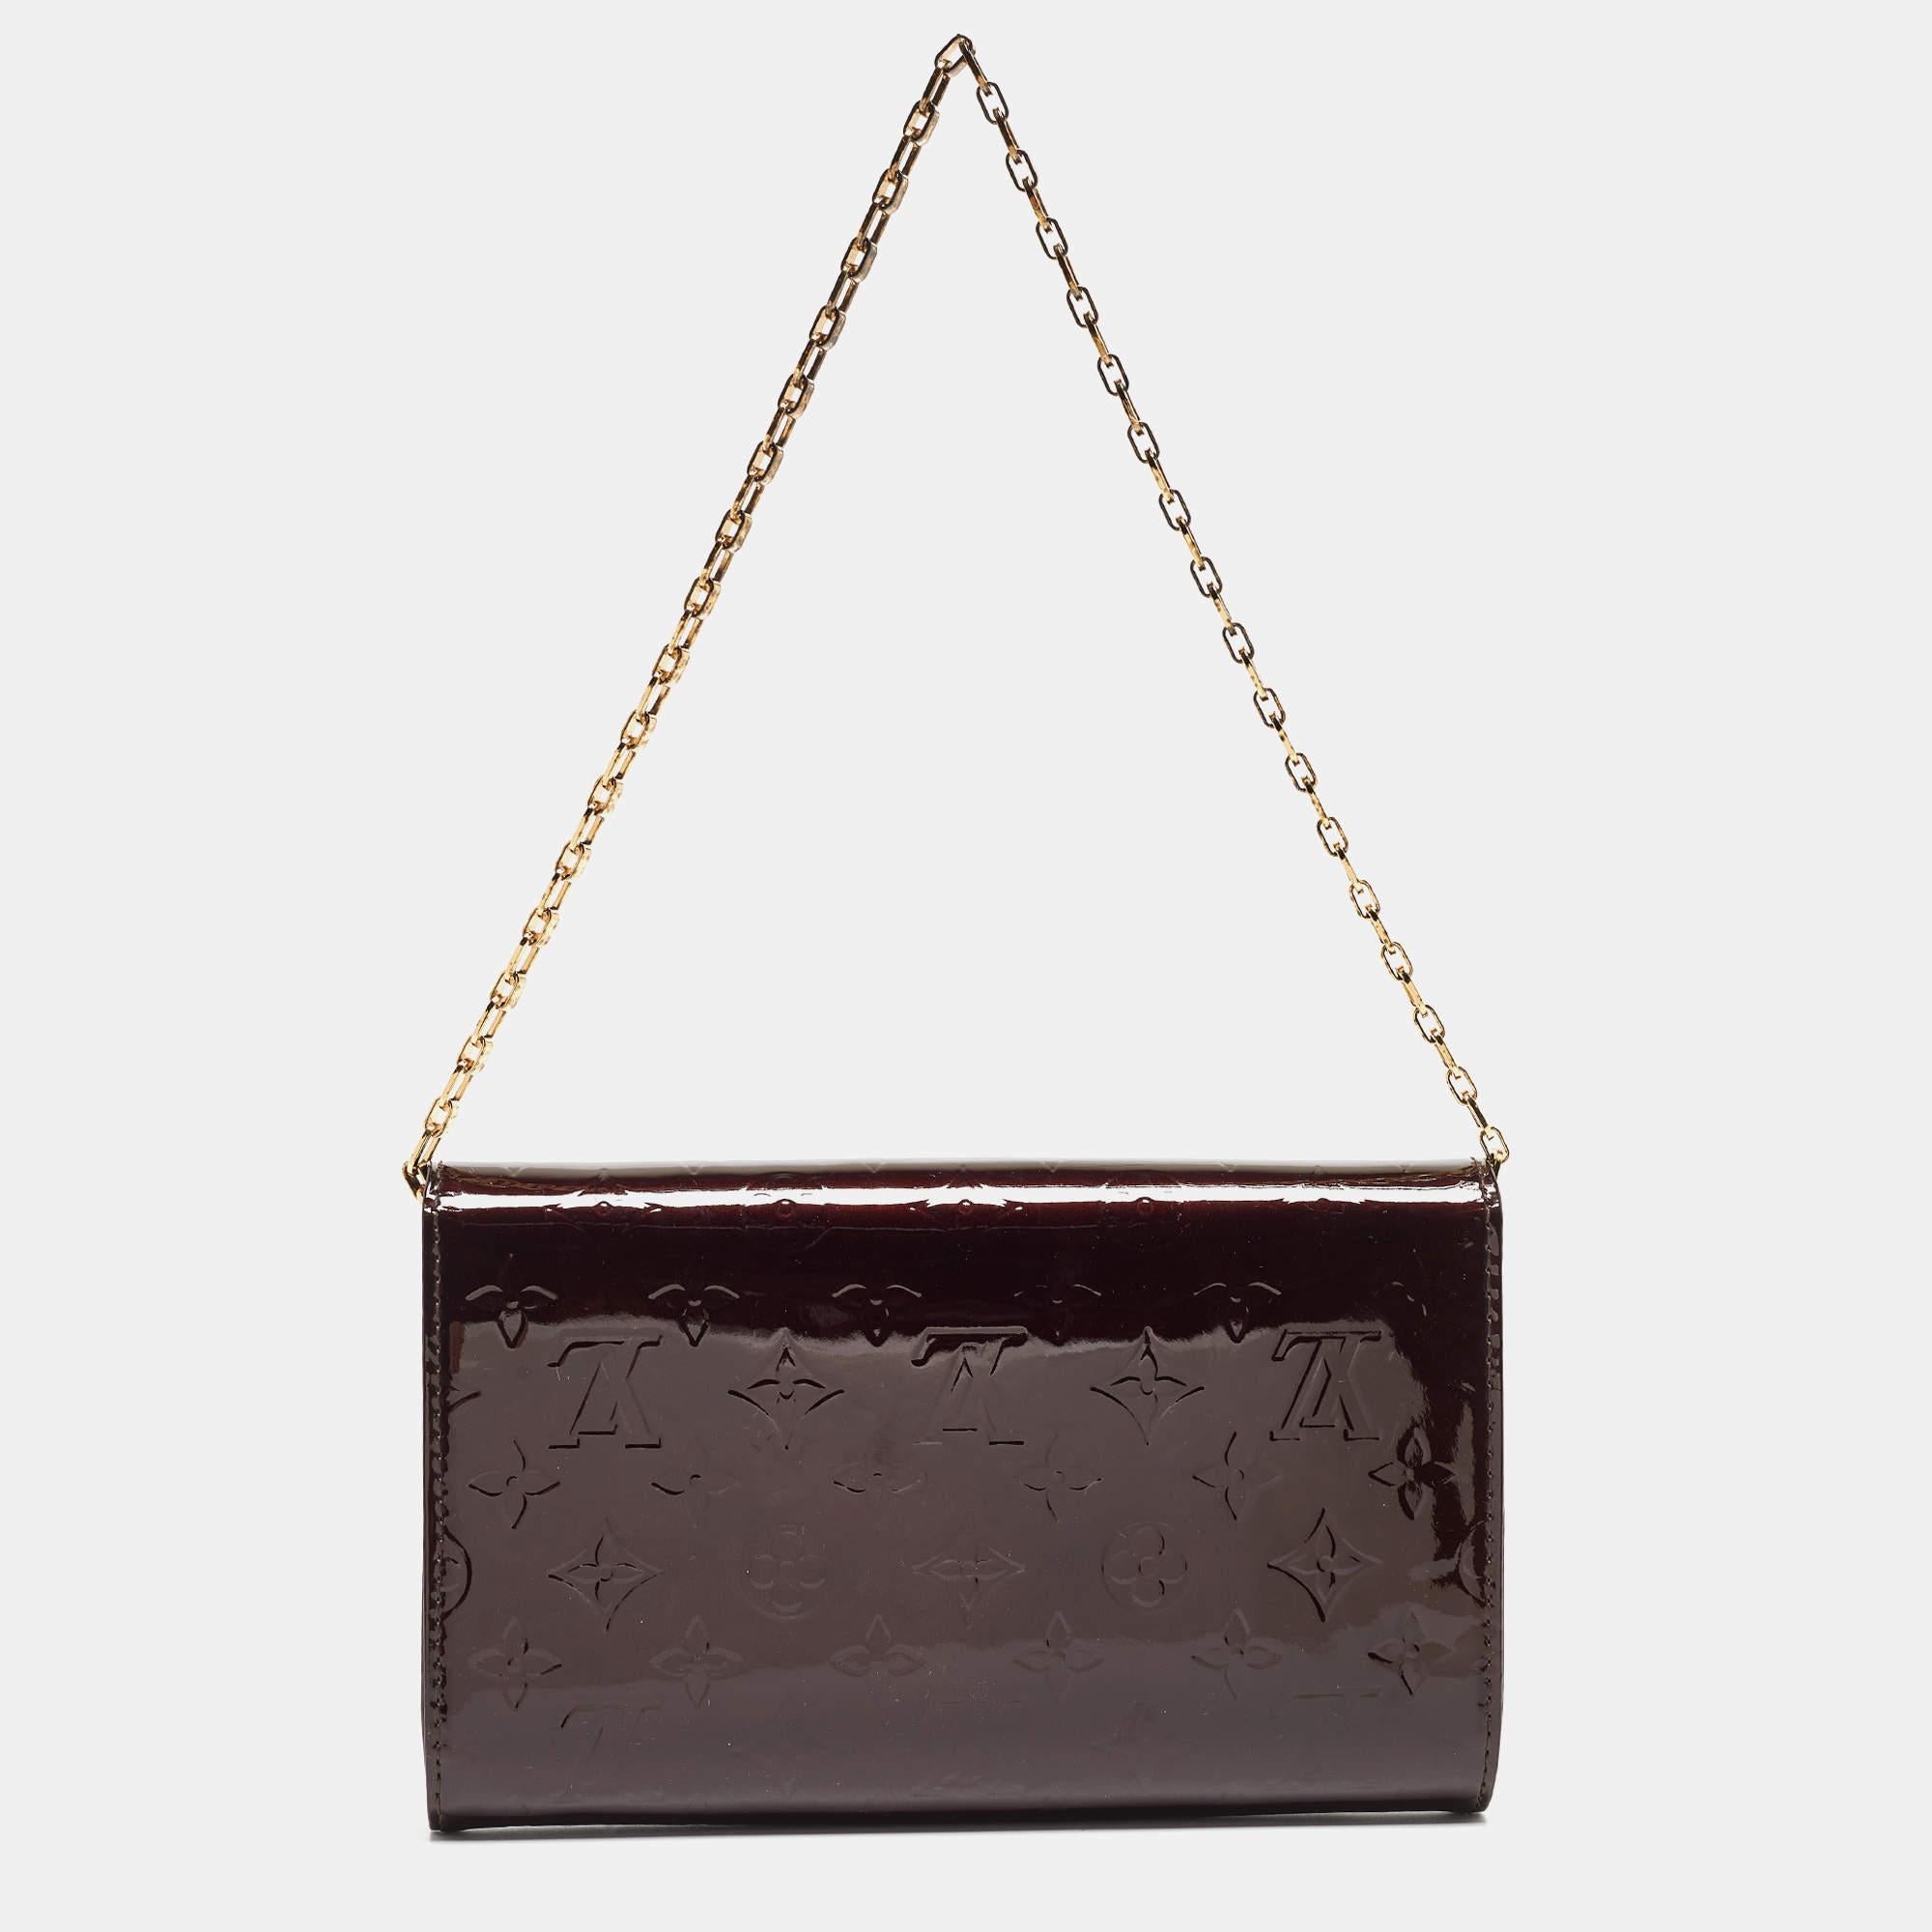 Louis Vuitton s'assure que vous disposez d'un merveilleux accessoire pour vous accompagner au quotidien avec ce sac bien confectionné. Il a un look caractéristique et une taille pratique.

Comprend : Original Dustbag, Original Box, Info Booklet,